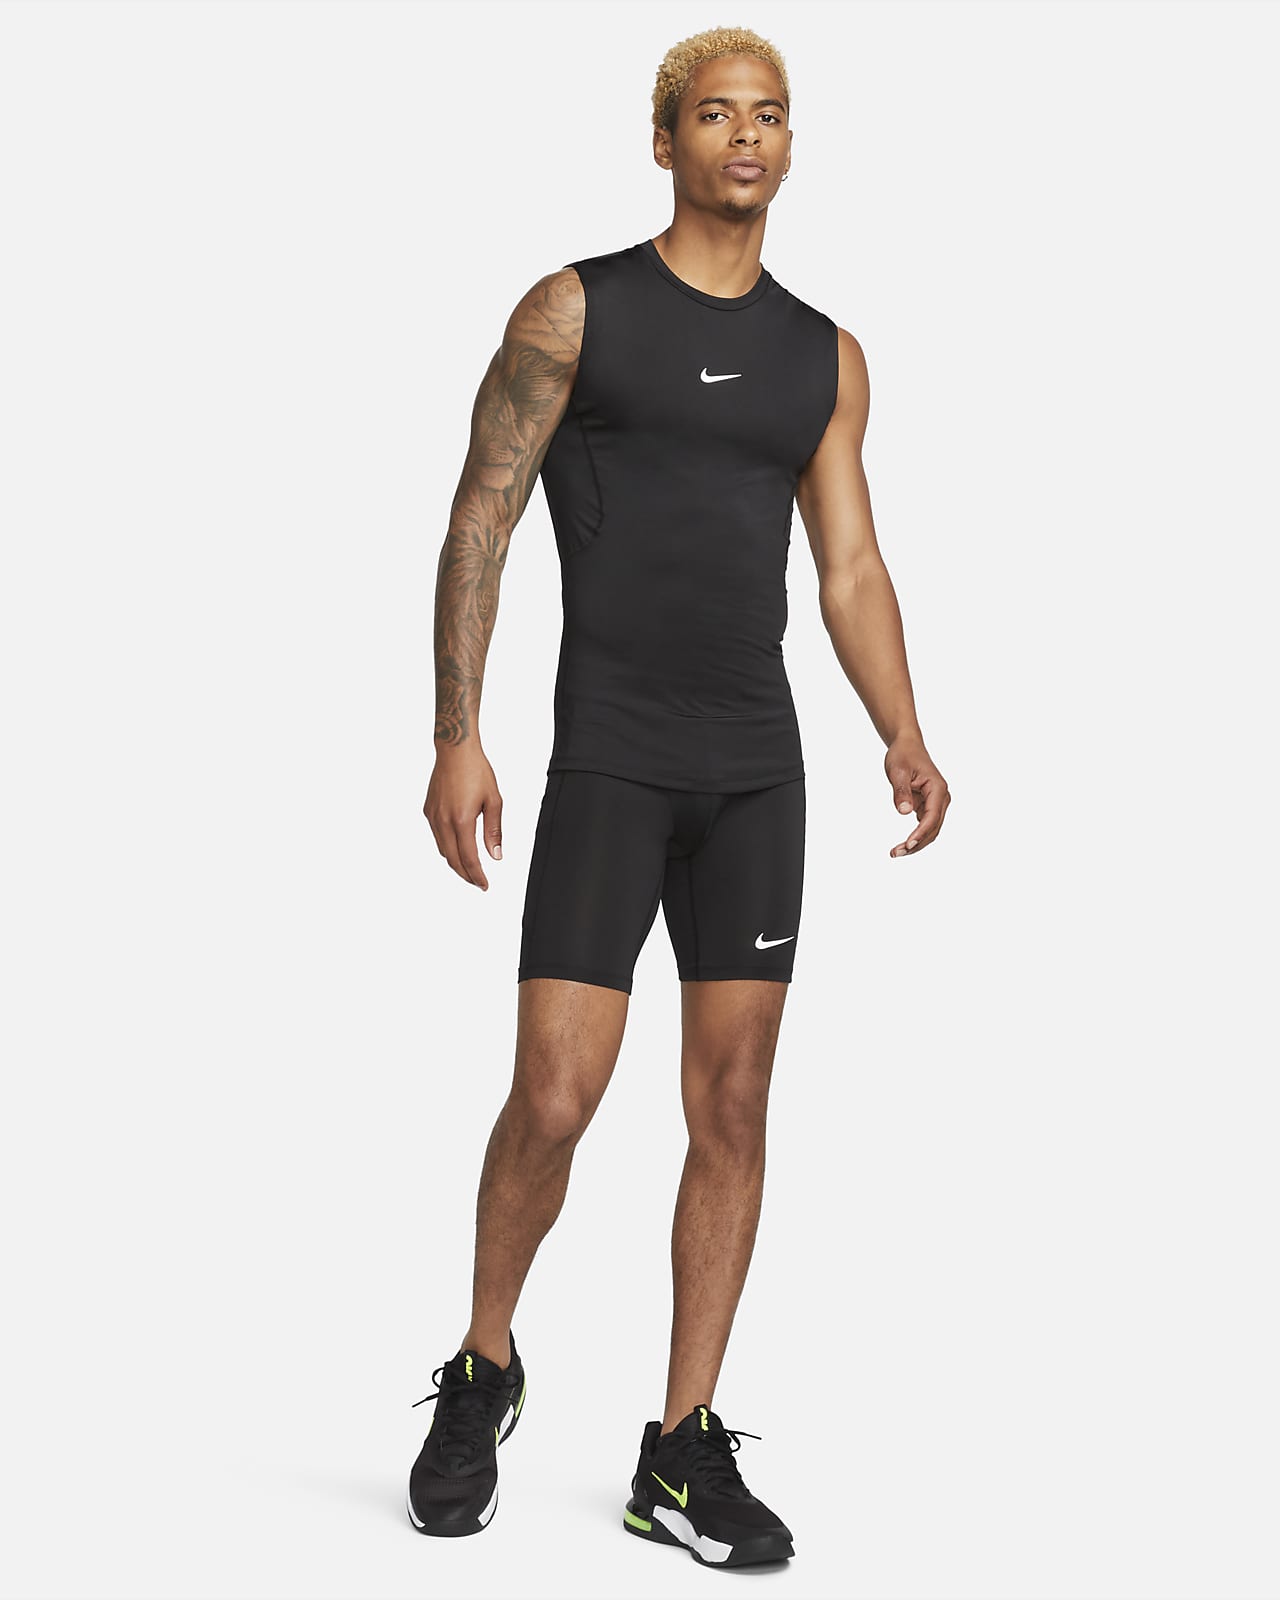 Nike Pro Men's Dri-FIT Slim Sleeveless Top.